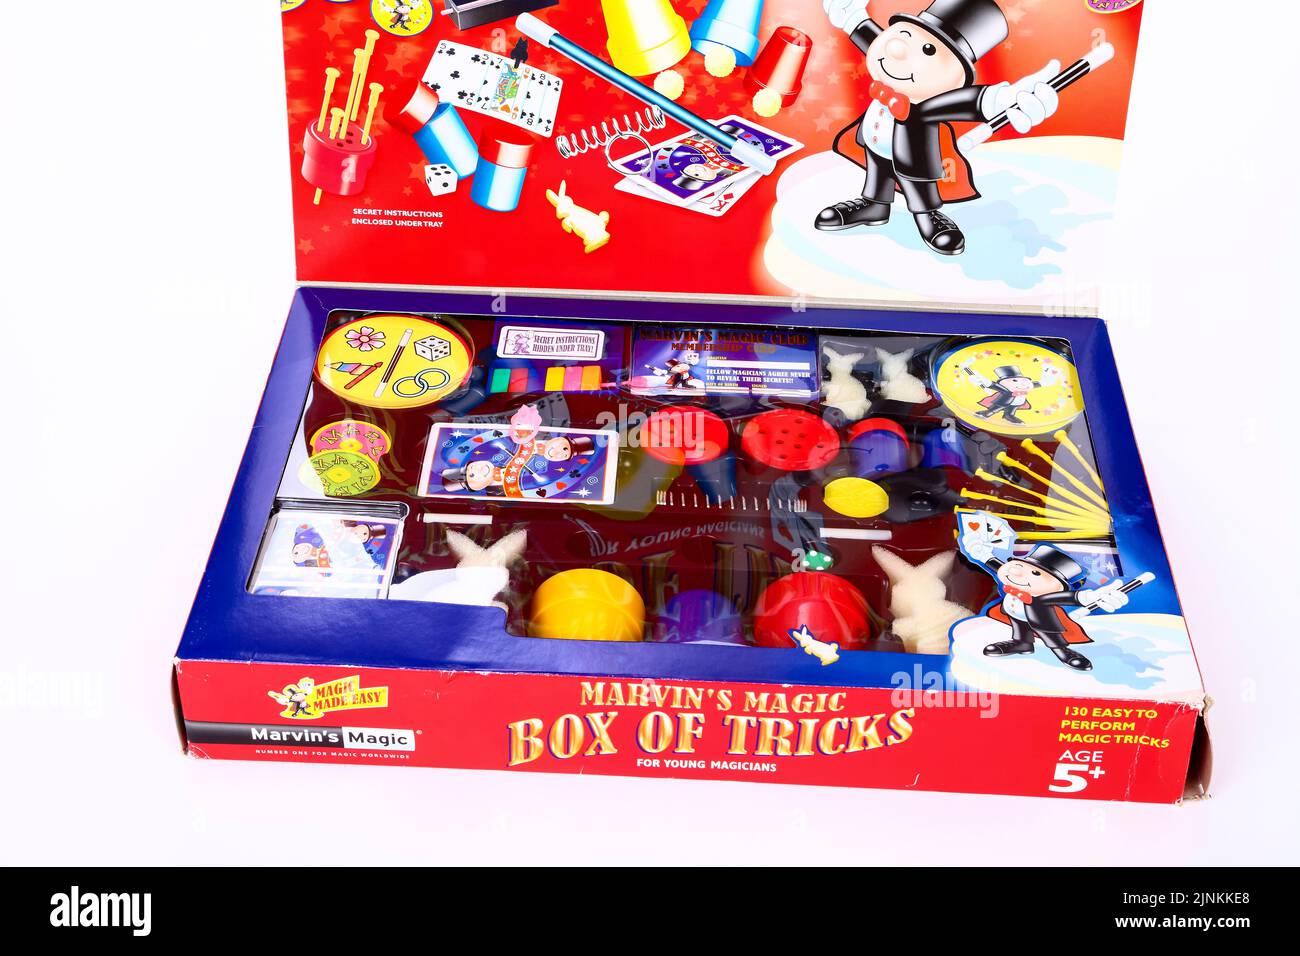 Marvin's Magic Box of Tricks espectáculo de magia en una caja aislada sobre un fondo blanco Foto de stock